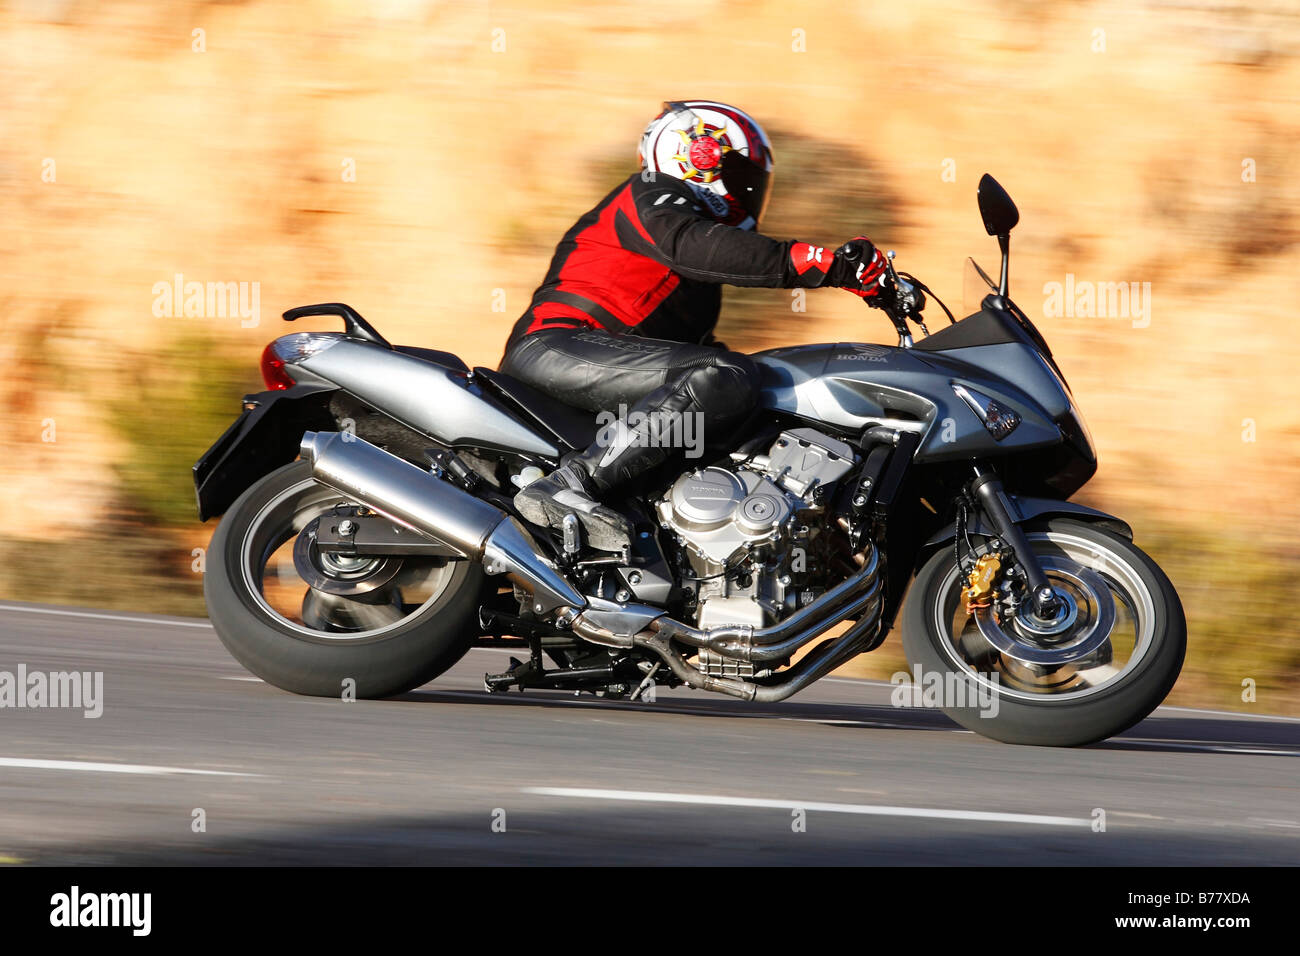 Motorbike, Honda CBF 600, panning Stock Photo